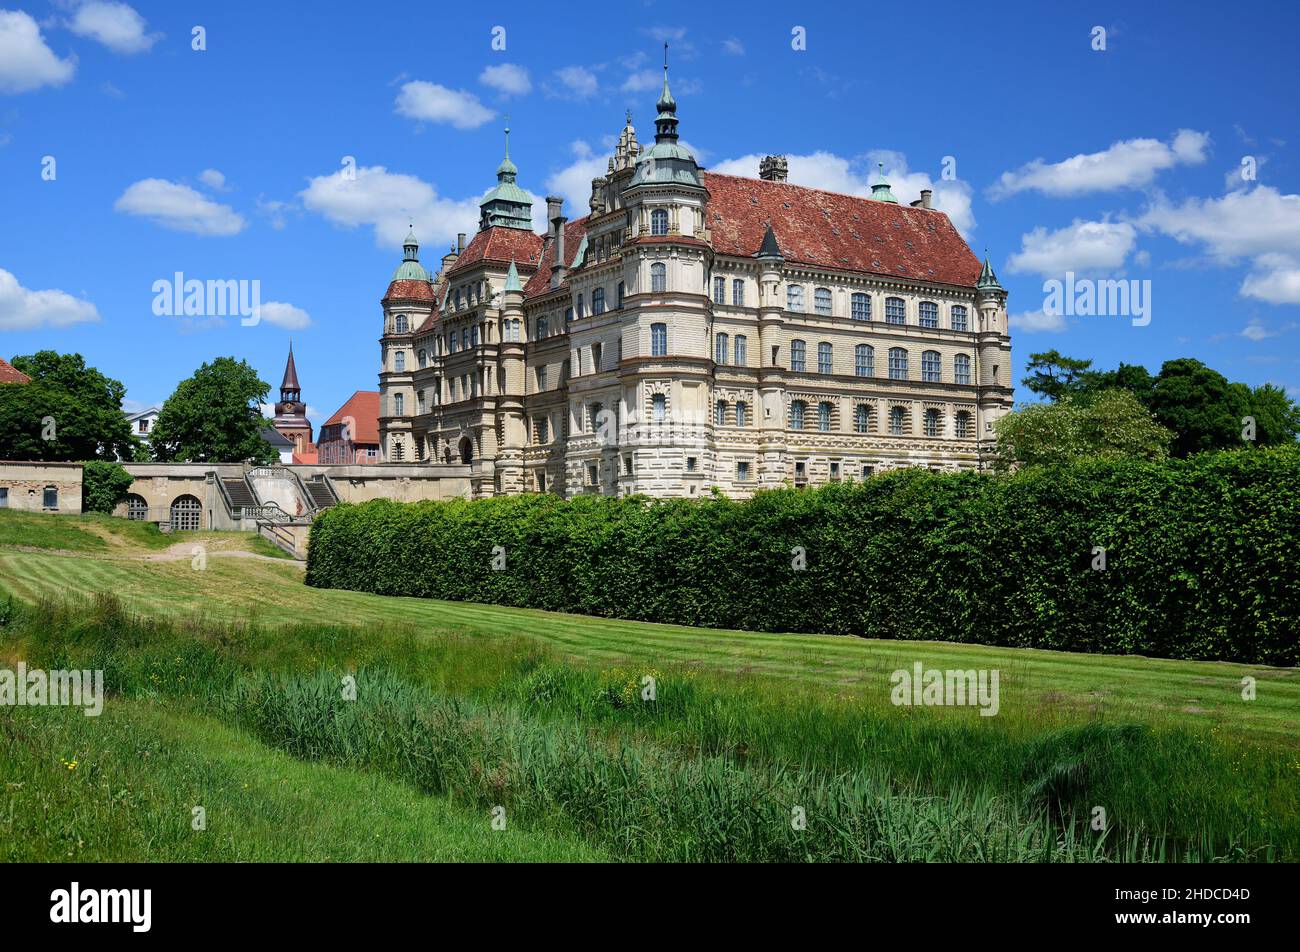 Europa, Deutschland, Mecklenburg-Vorpommern, Guestrow, Schloss Guestrow, erbaut 16. Jahrhundert, Renaissance Bauwerk, Seitenansicht, Stock Photo